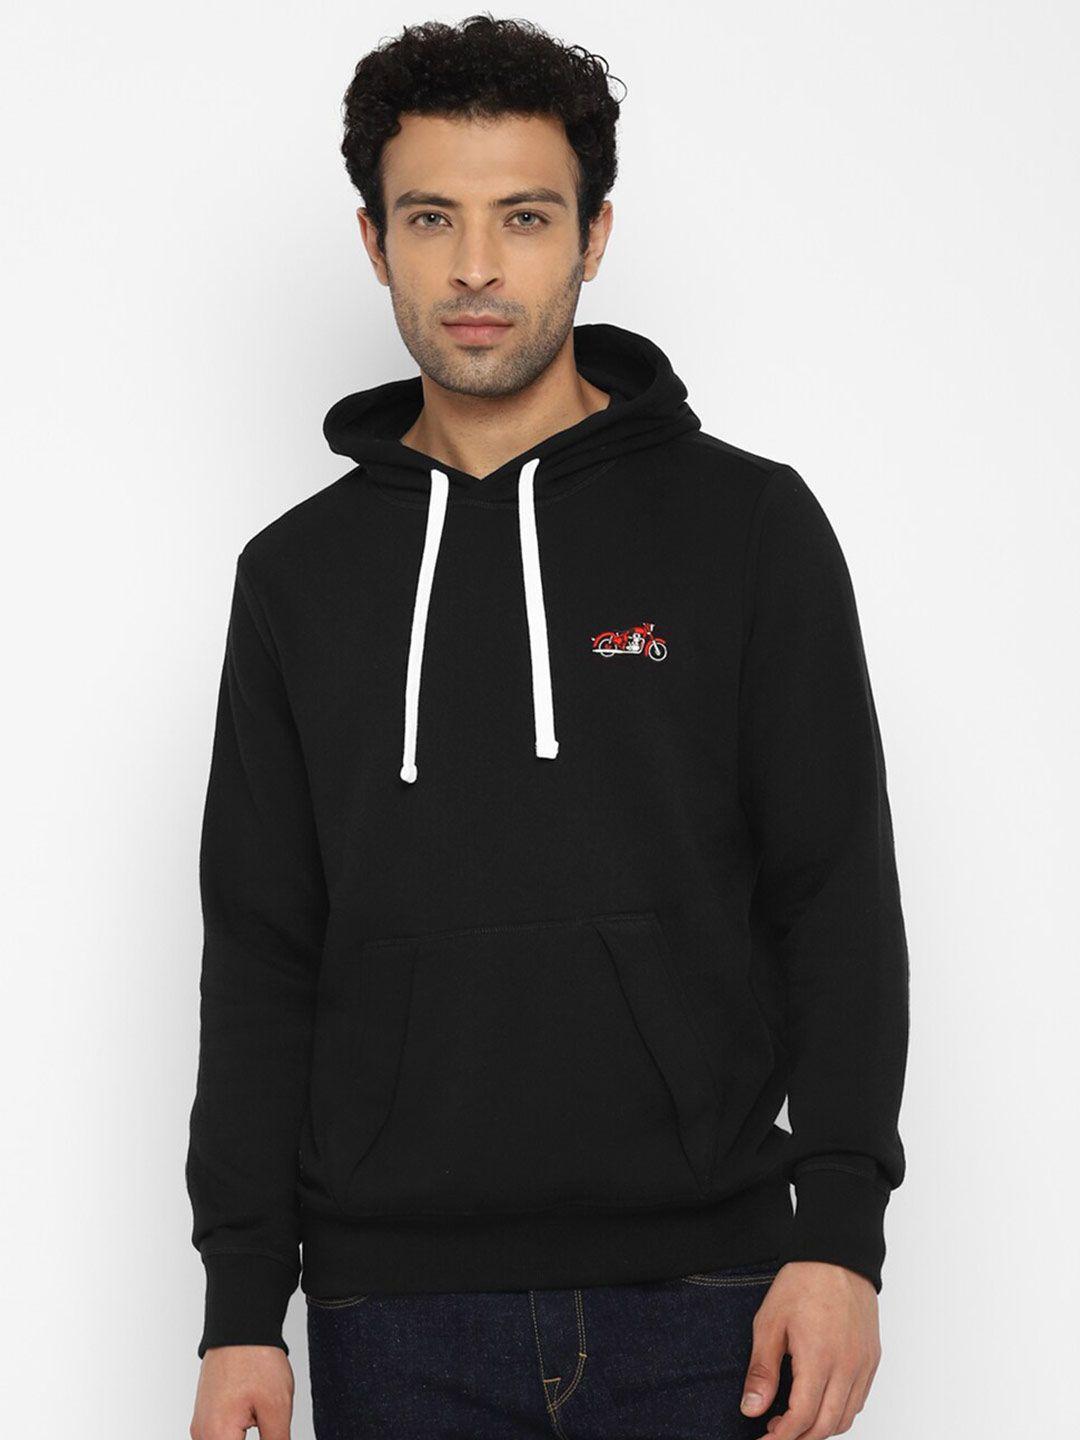 royal-enfield-men-black-printed-hooded-sweatshirt